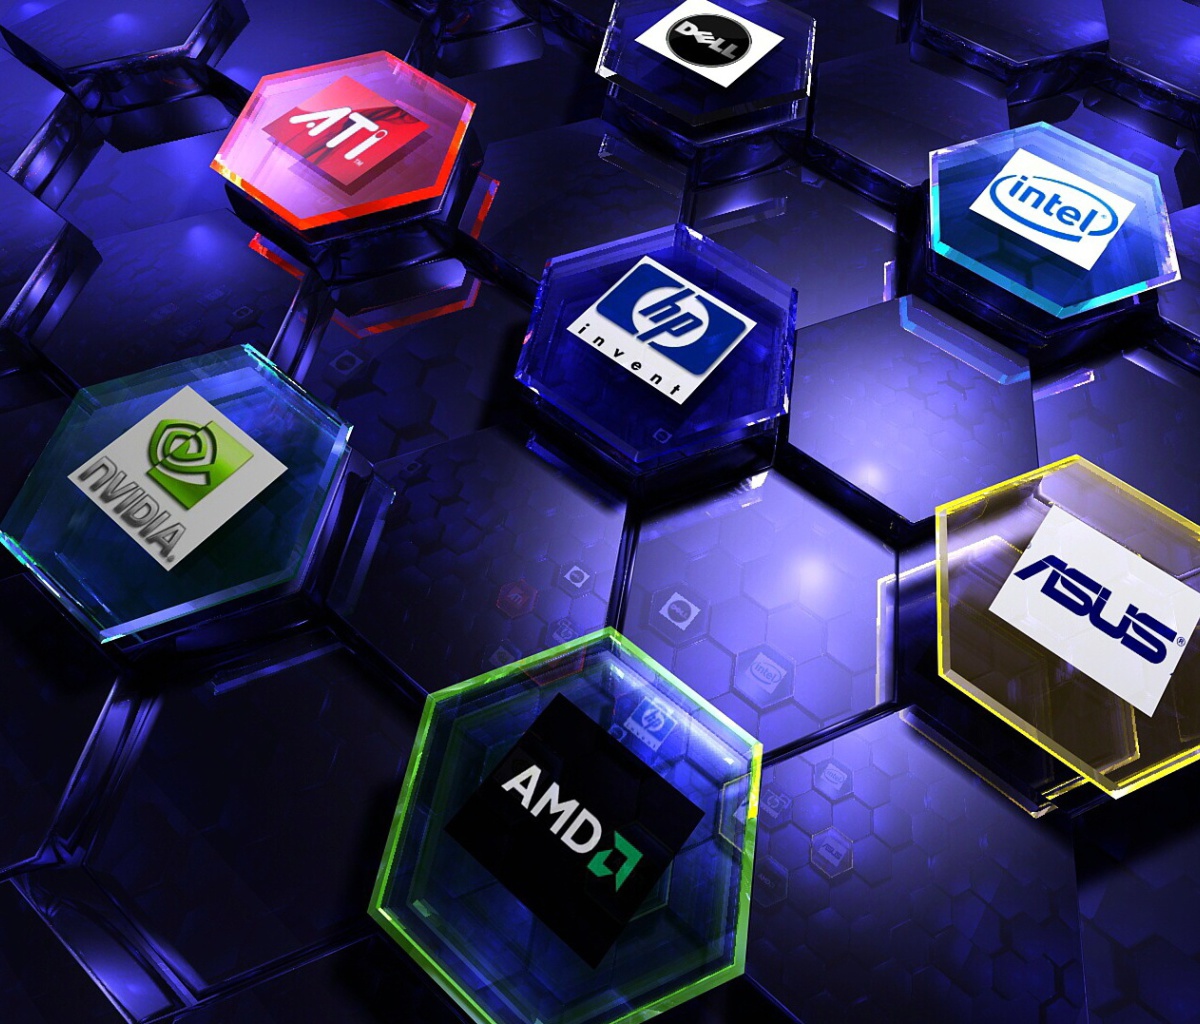 Sfondi Hi-Tech Logos: AMD, HP, Ati, Nvidia, Asus 1200x1024